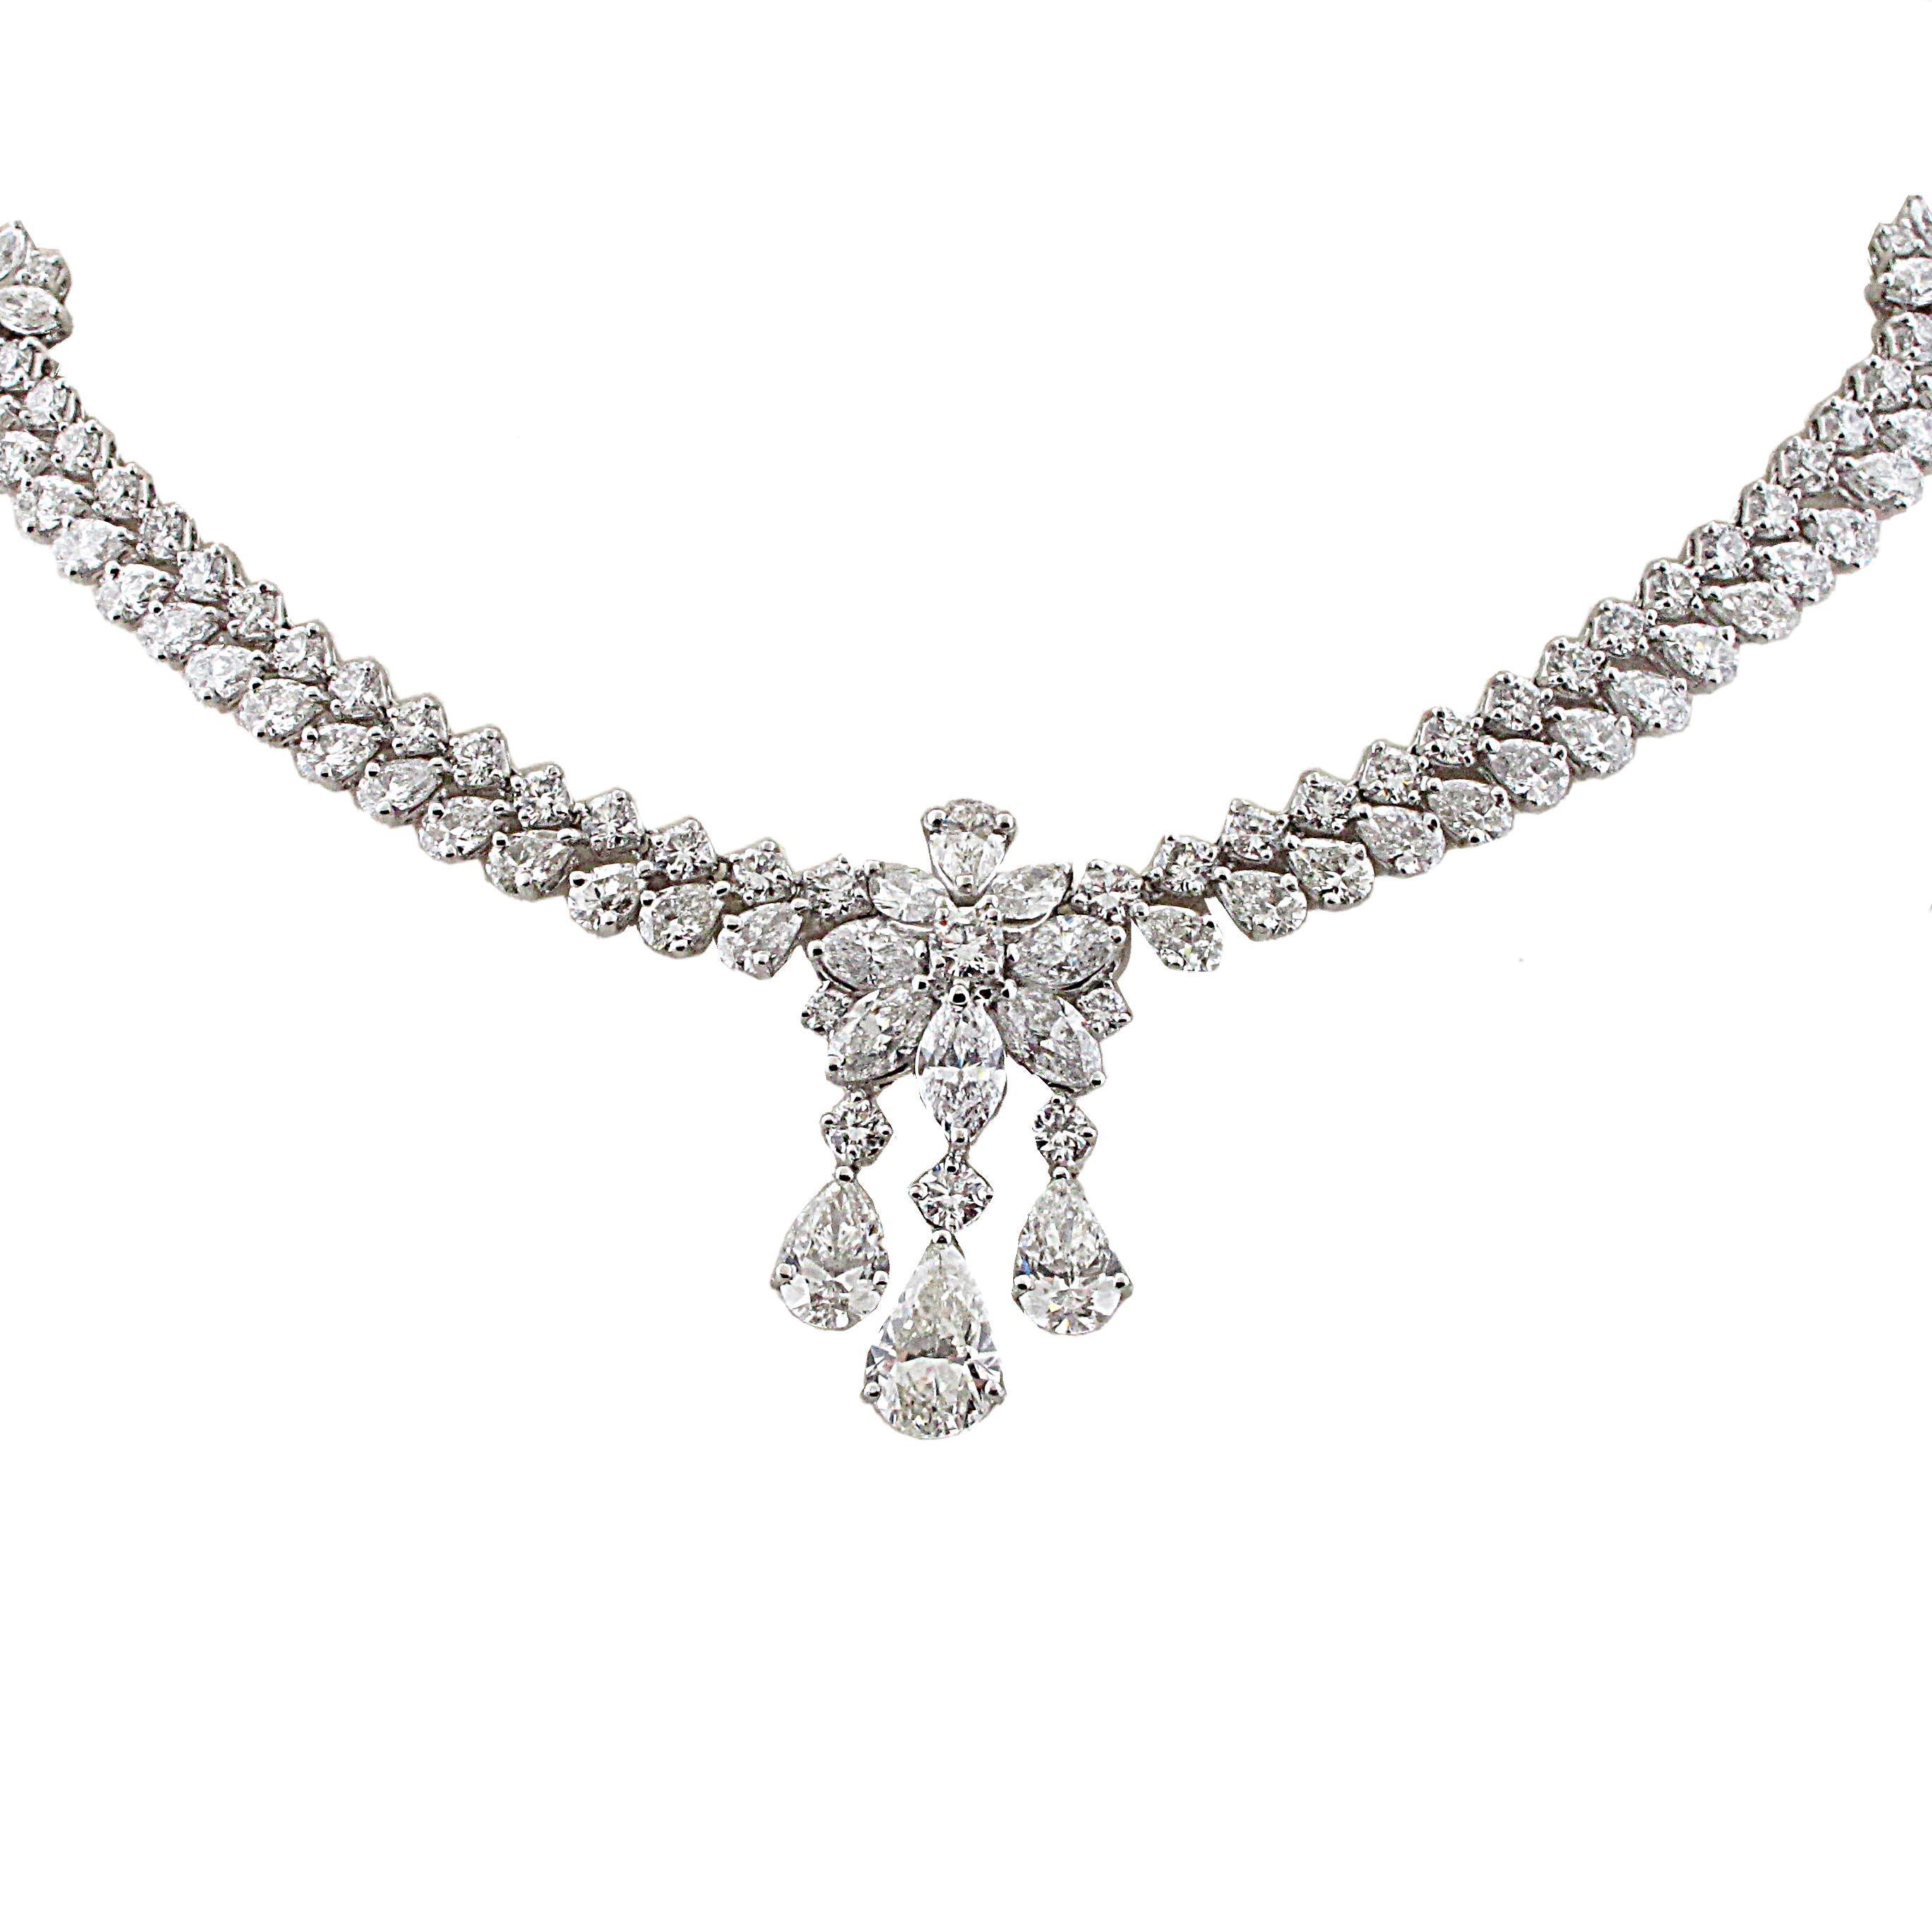 40 carat diamond necklace